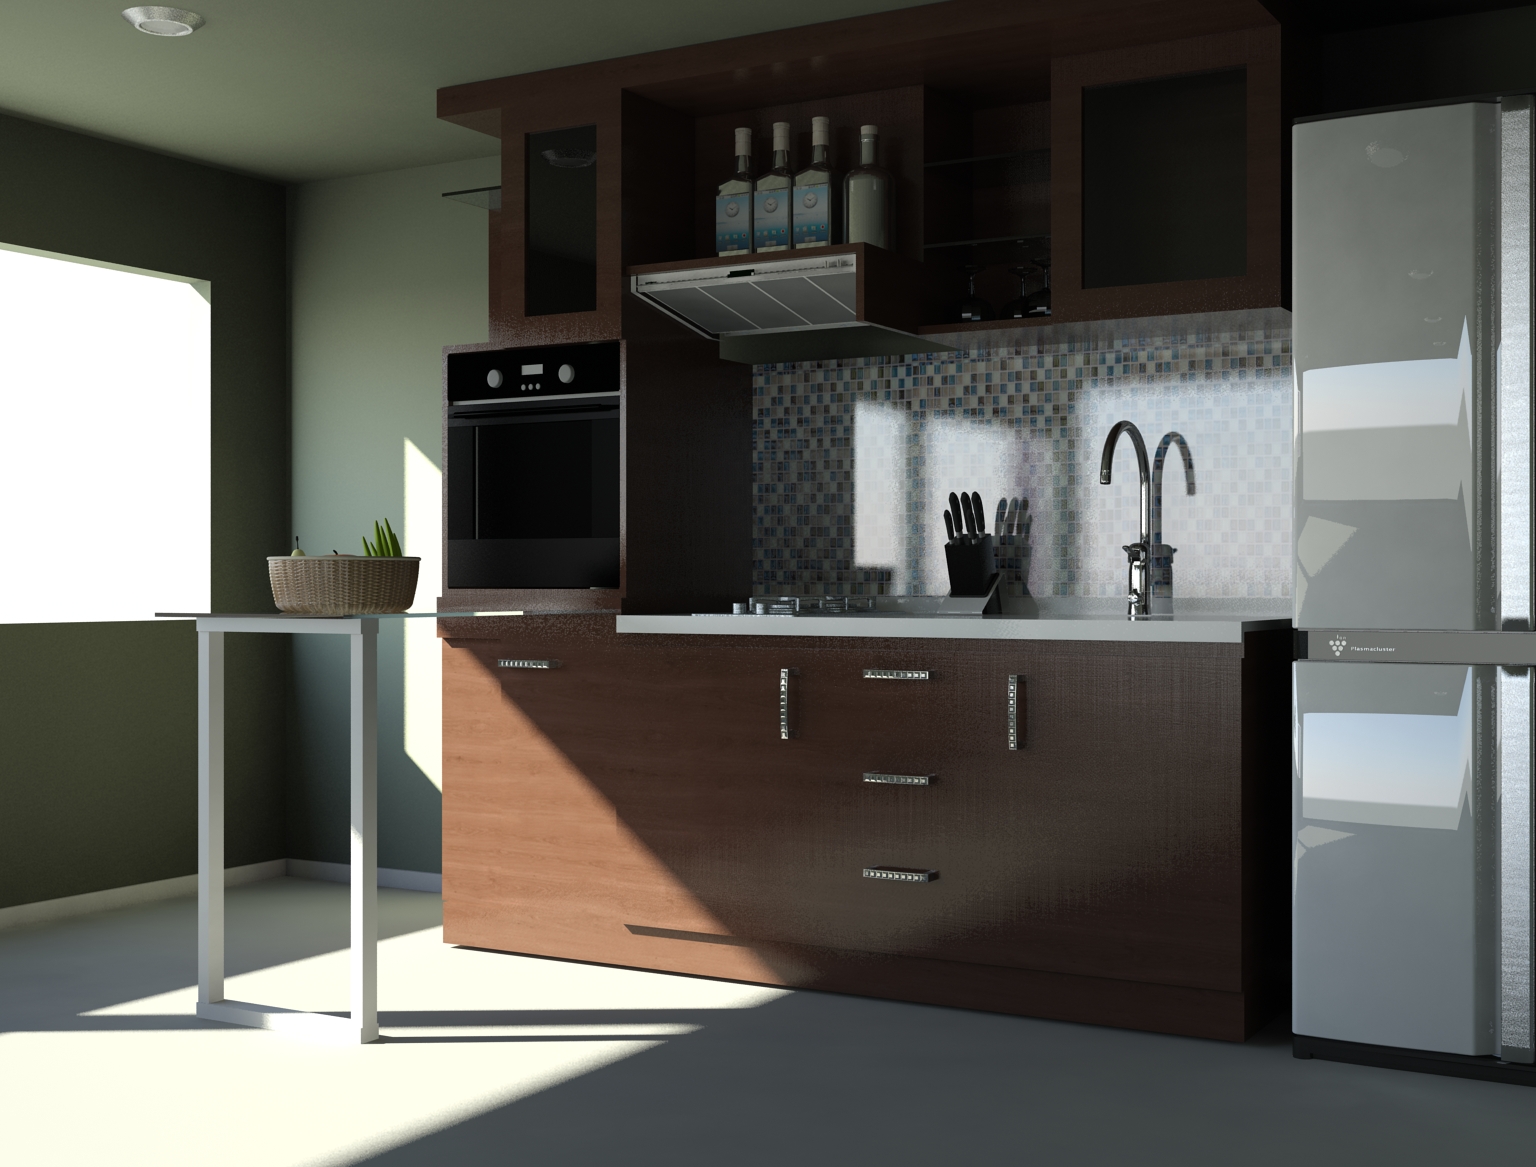 minimalist kitchen set design freshouzcom